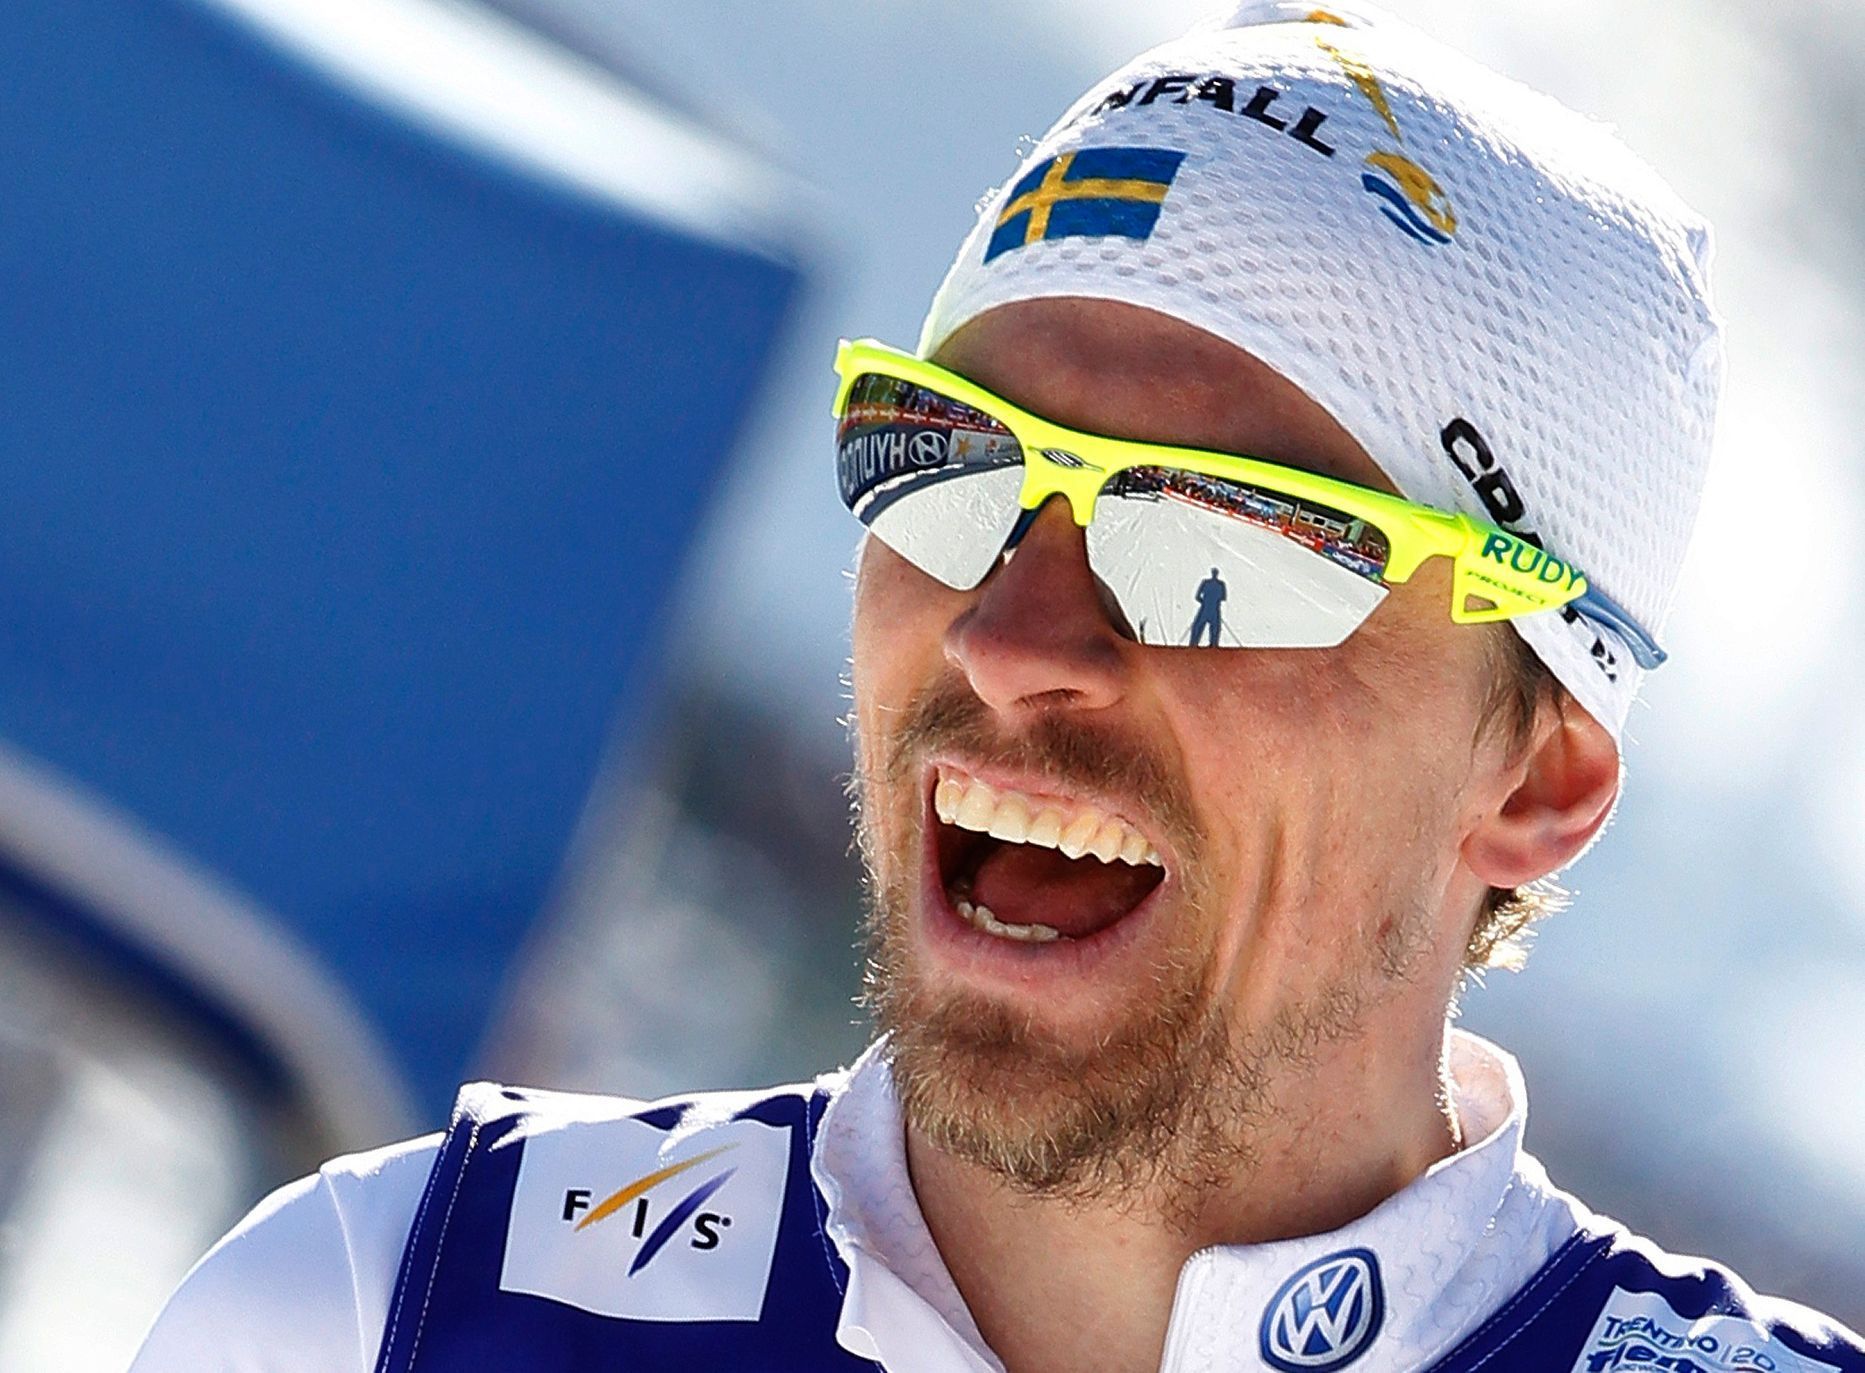 Johan Olsson se raduje z vítězství na klasické 50ce na MS ve Val di Fiemme 2013